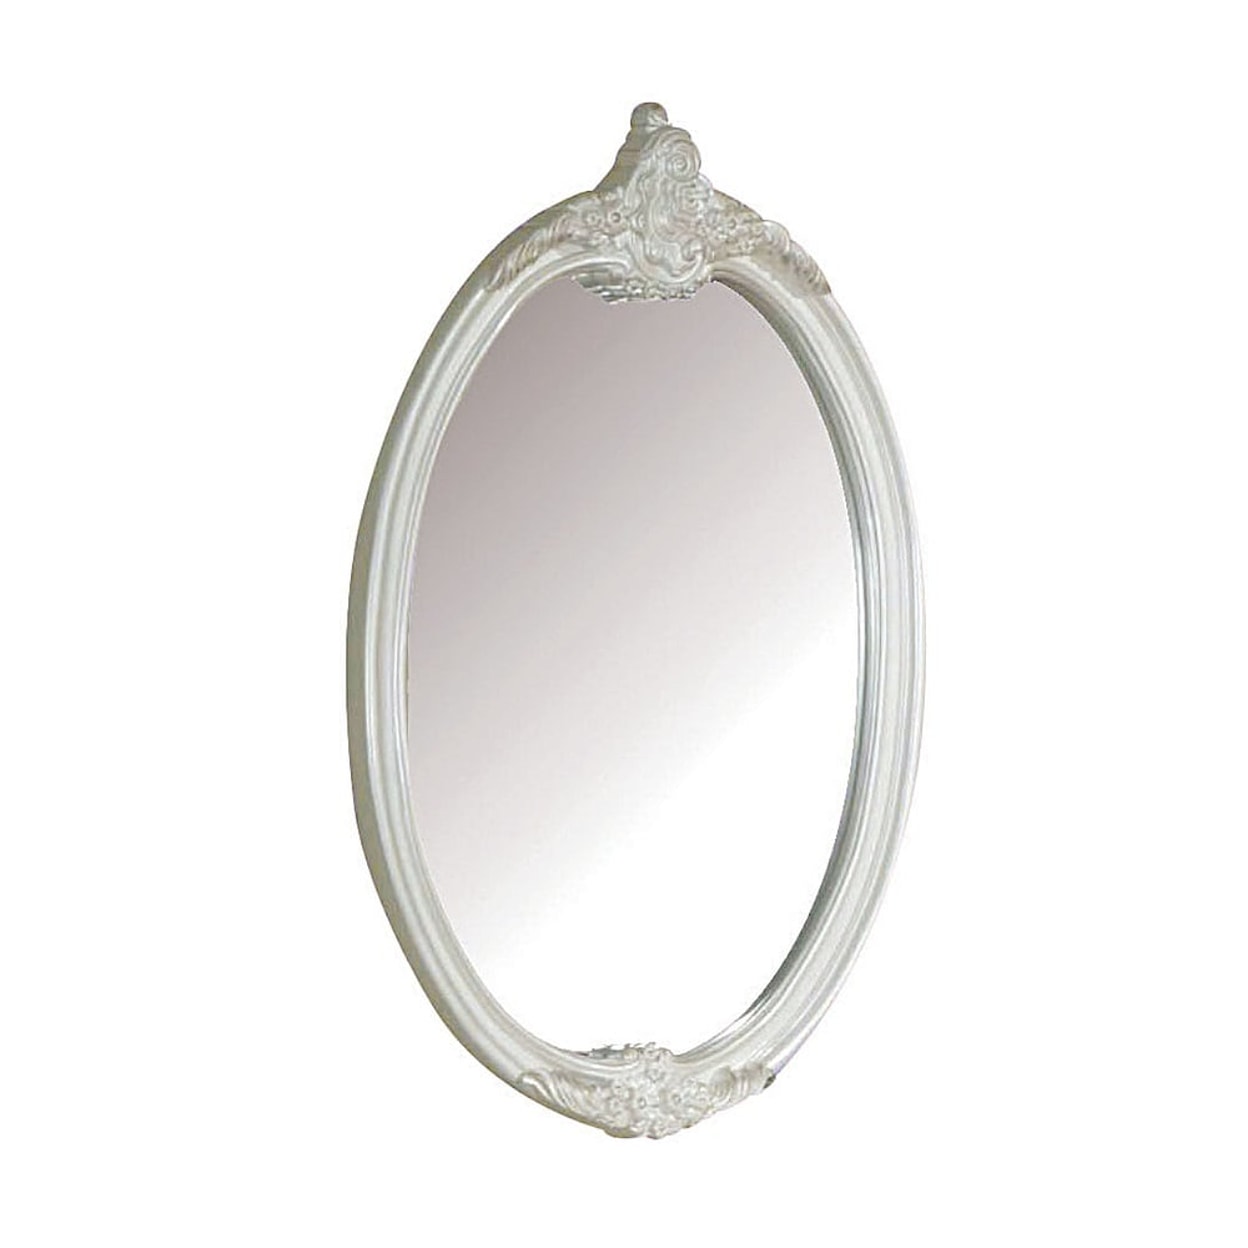 Acme Furniture Pearl Mirror